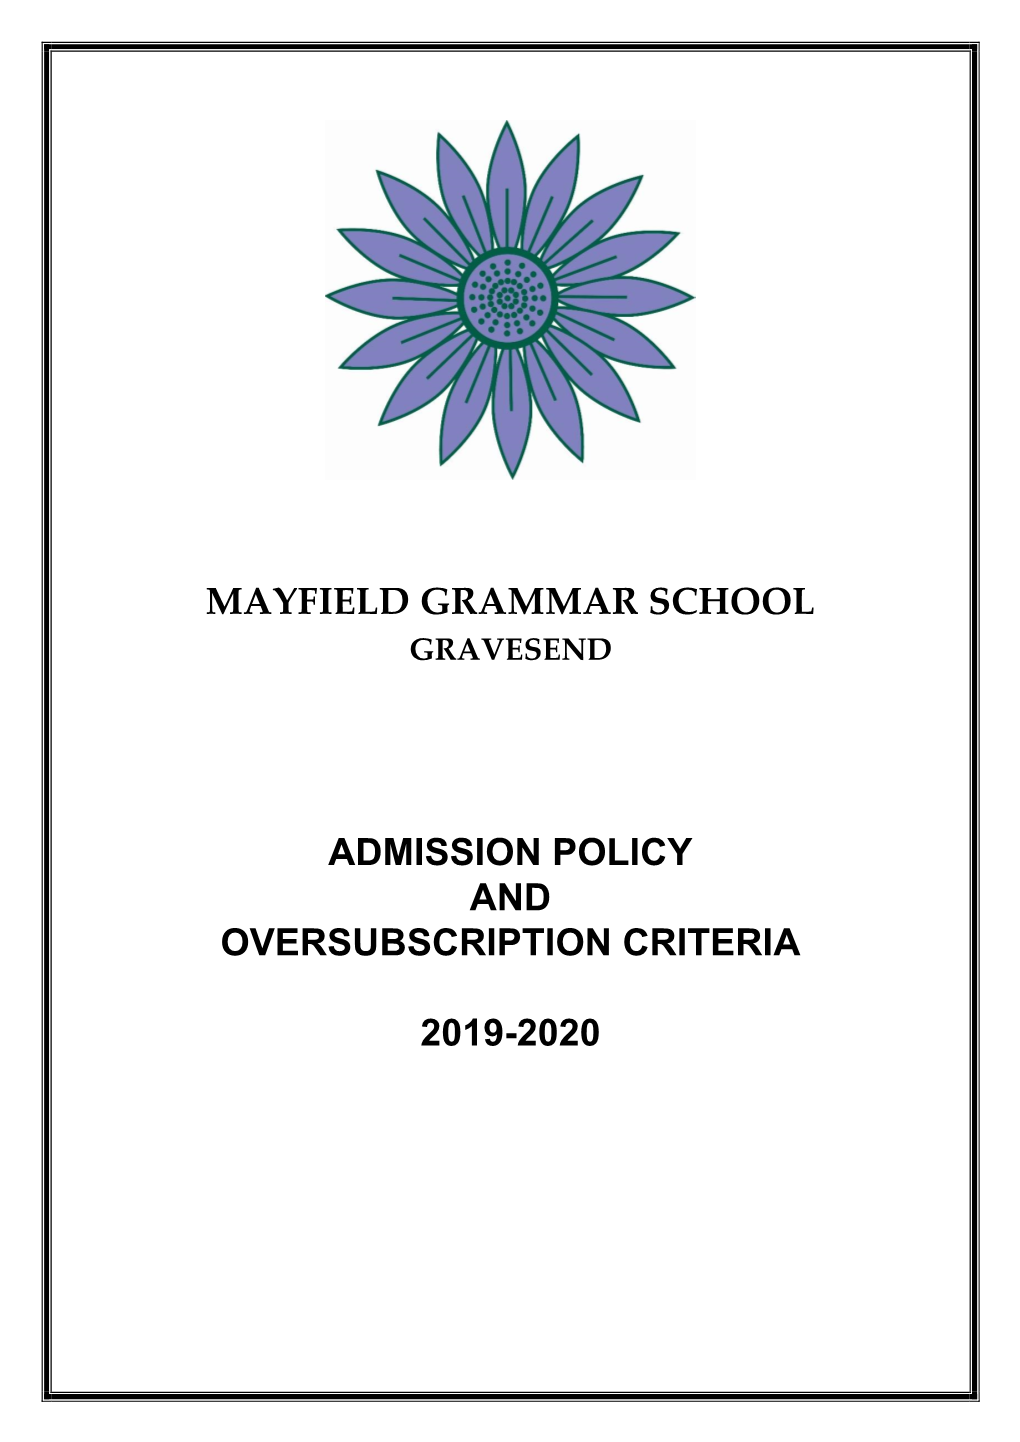 Mayfield Grammar School Gravesend